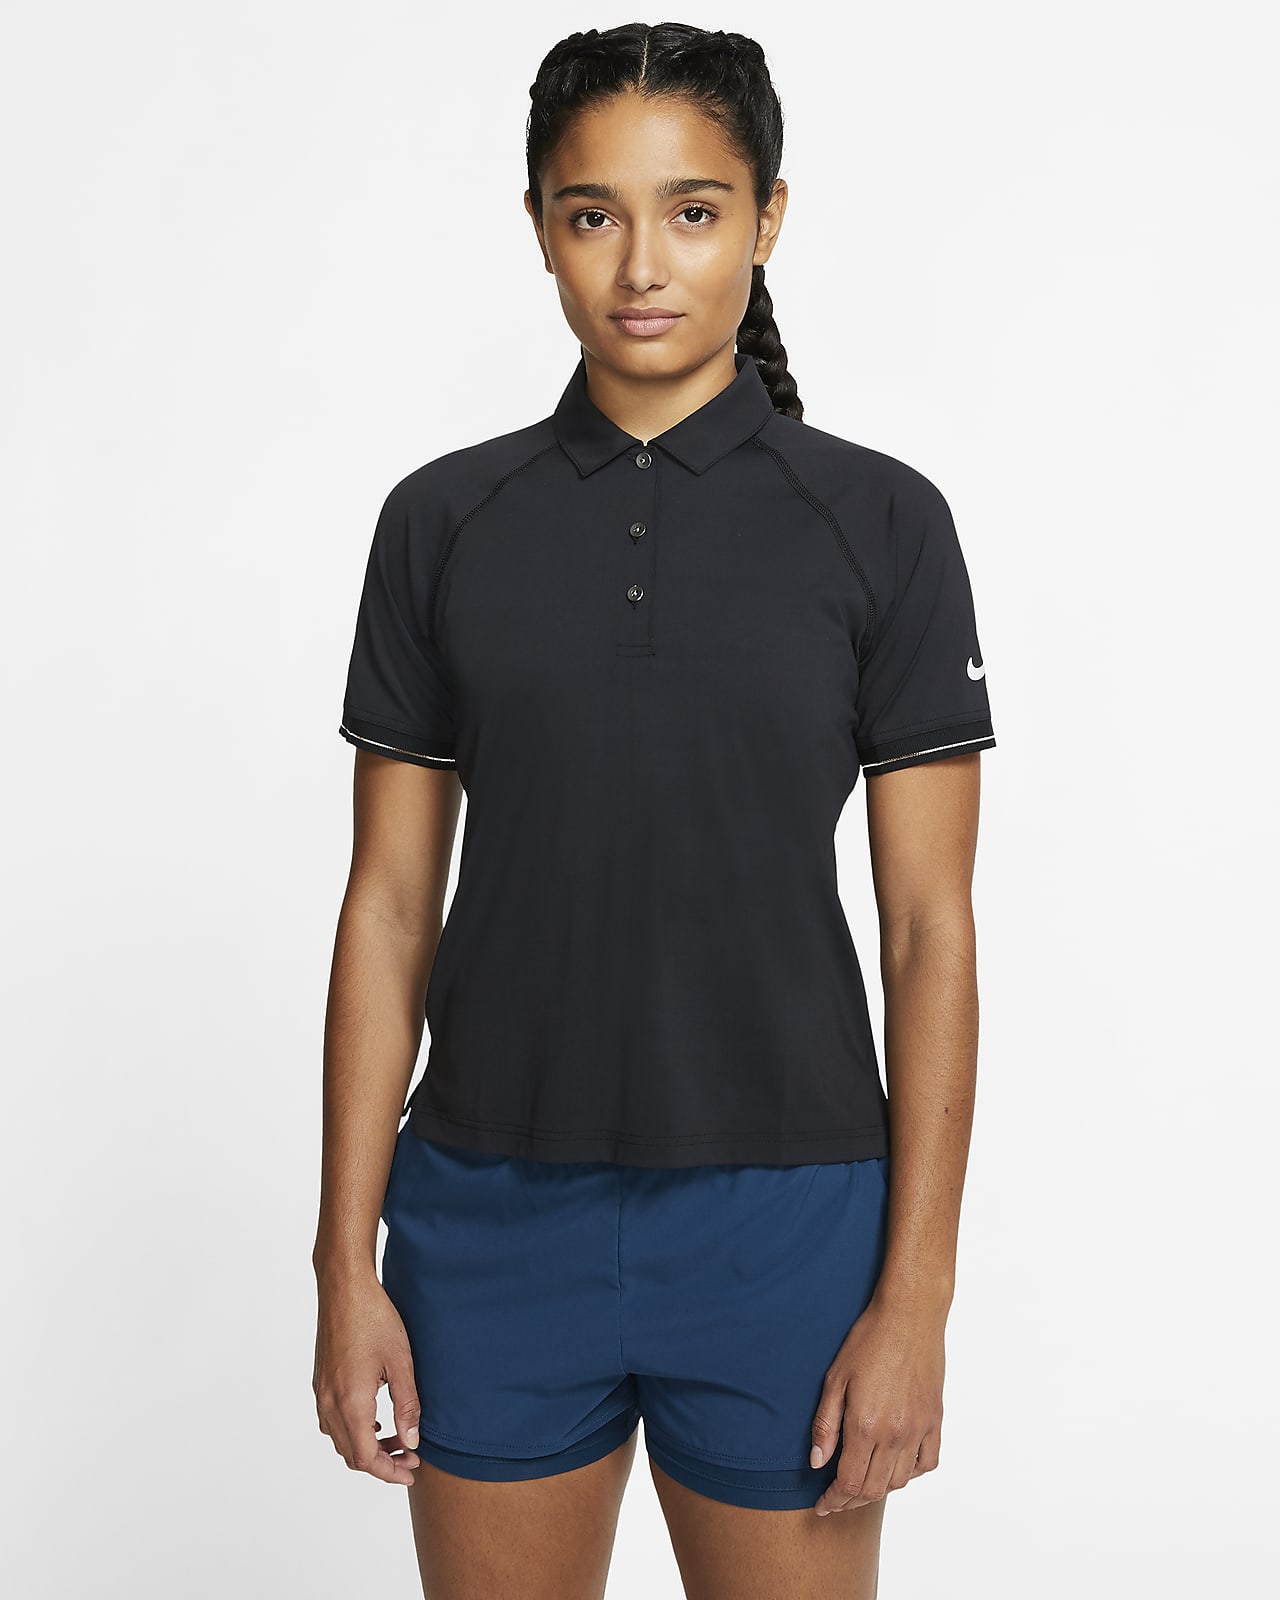 NikeCourt Tennis-Poloshirt für Damen